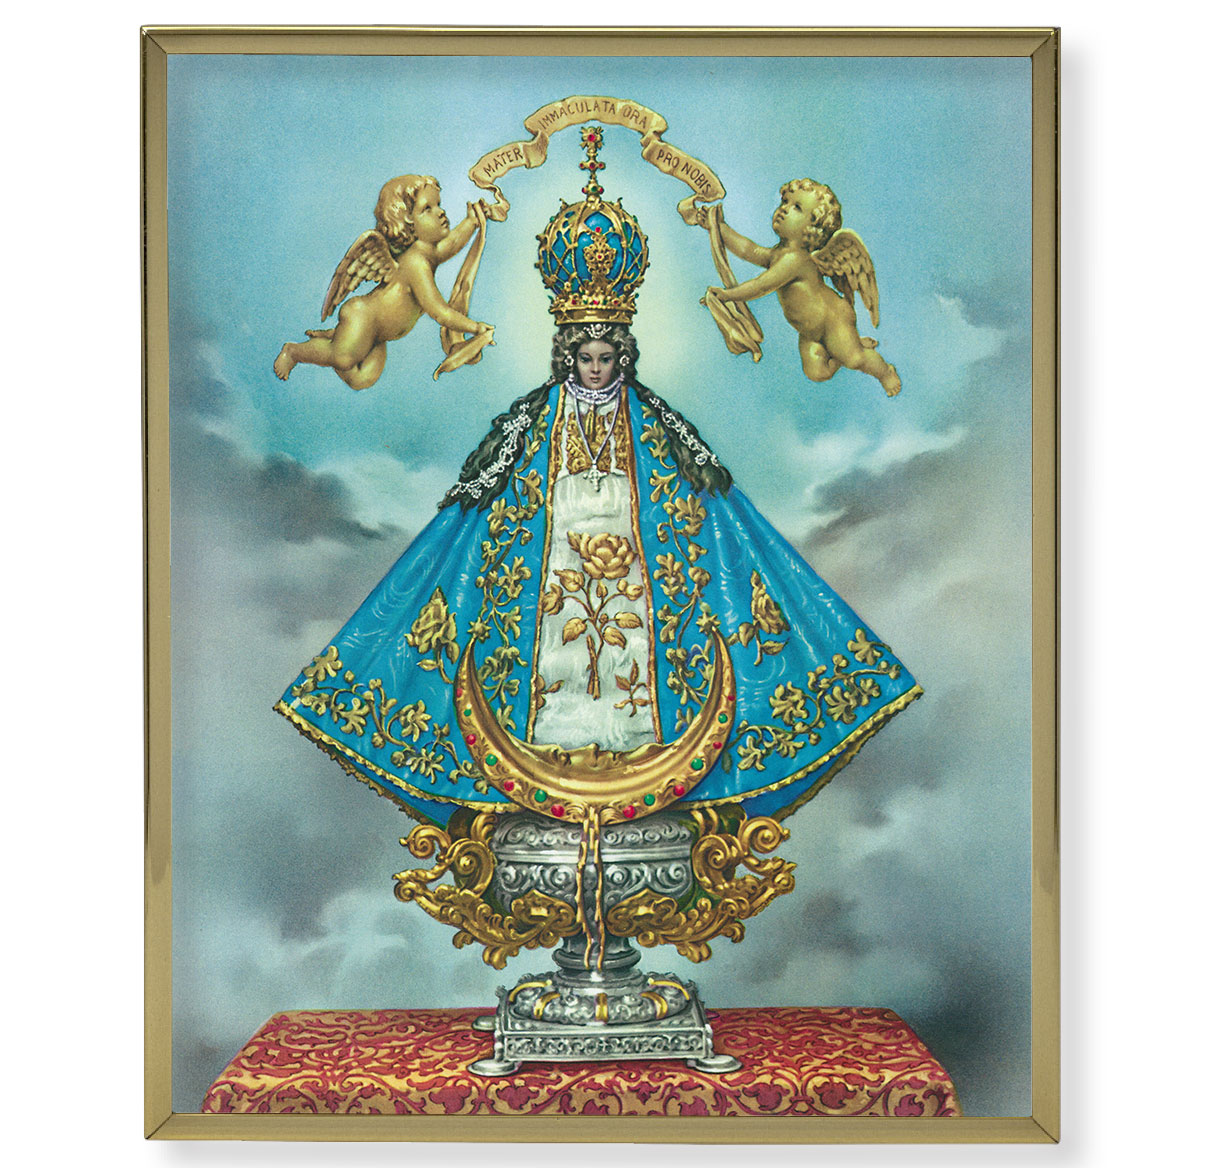 Virgen de San Juan Gold Framed Plaque Art